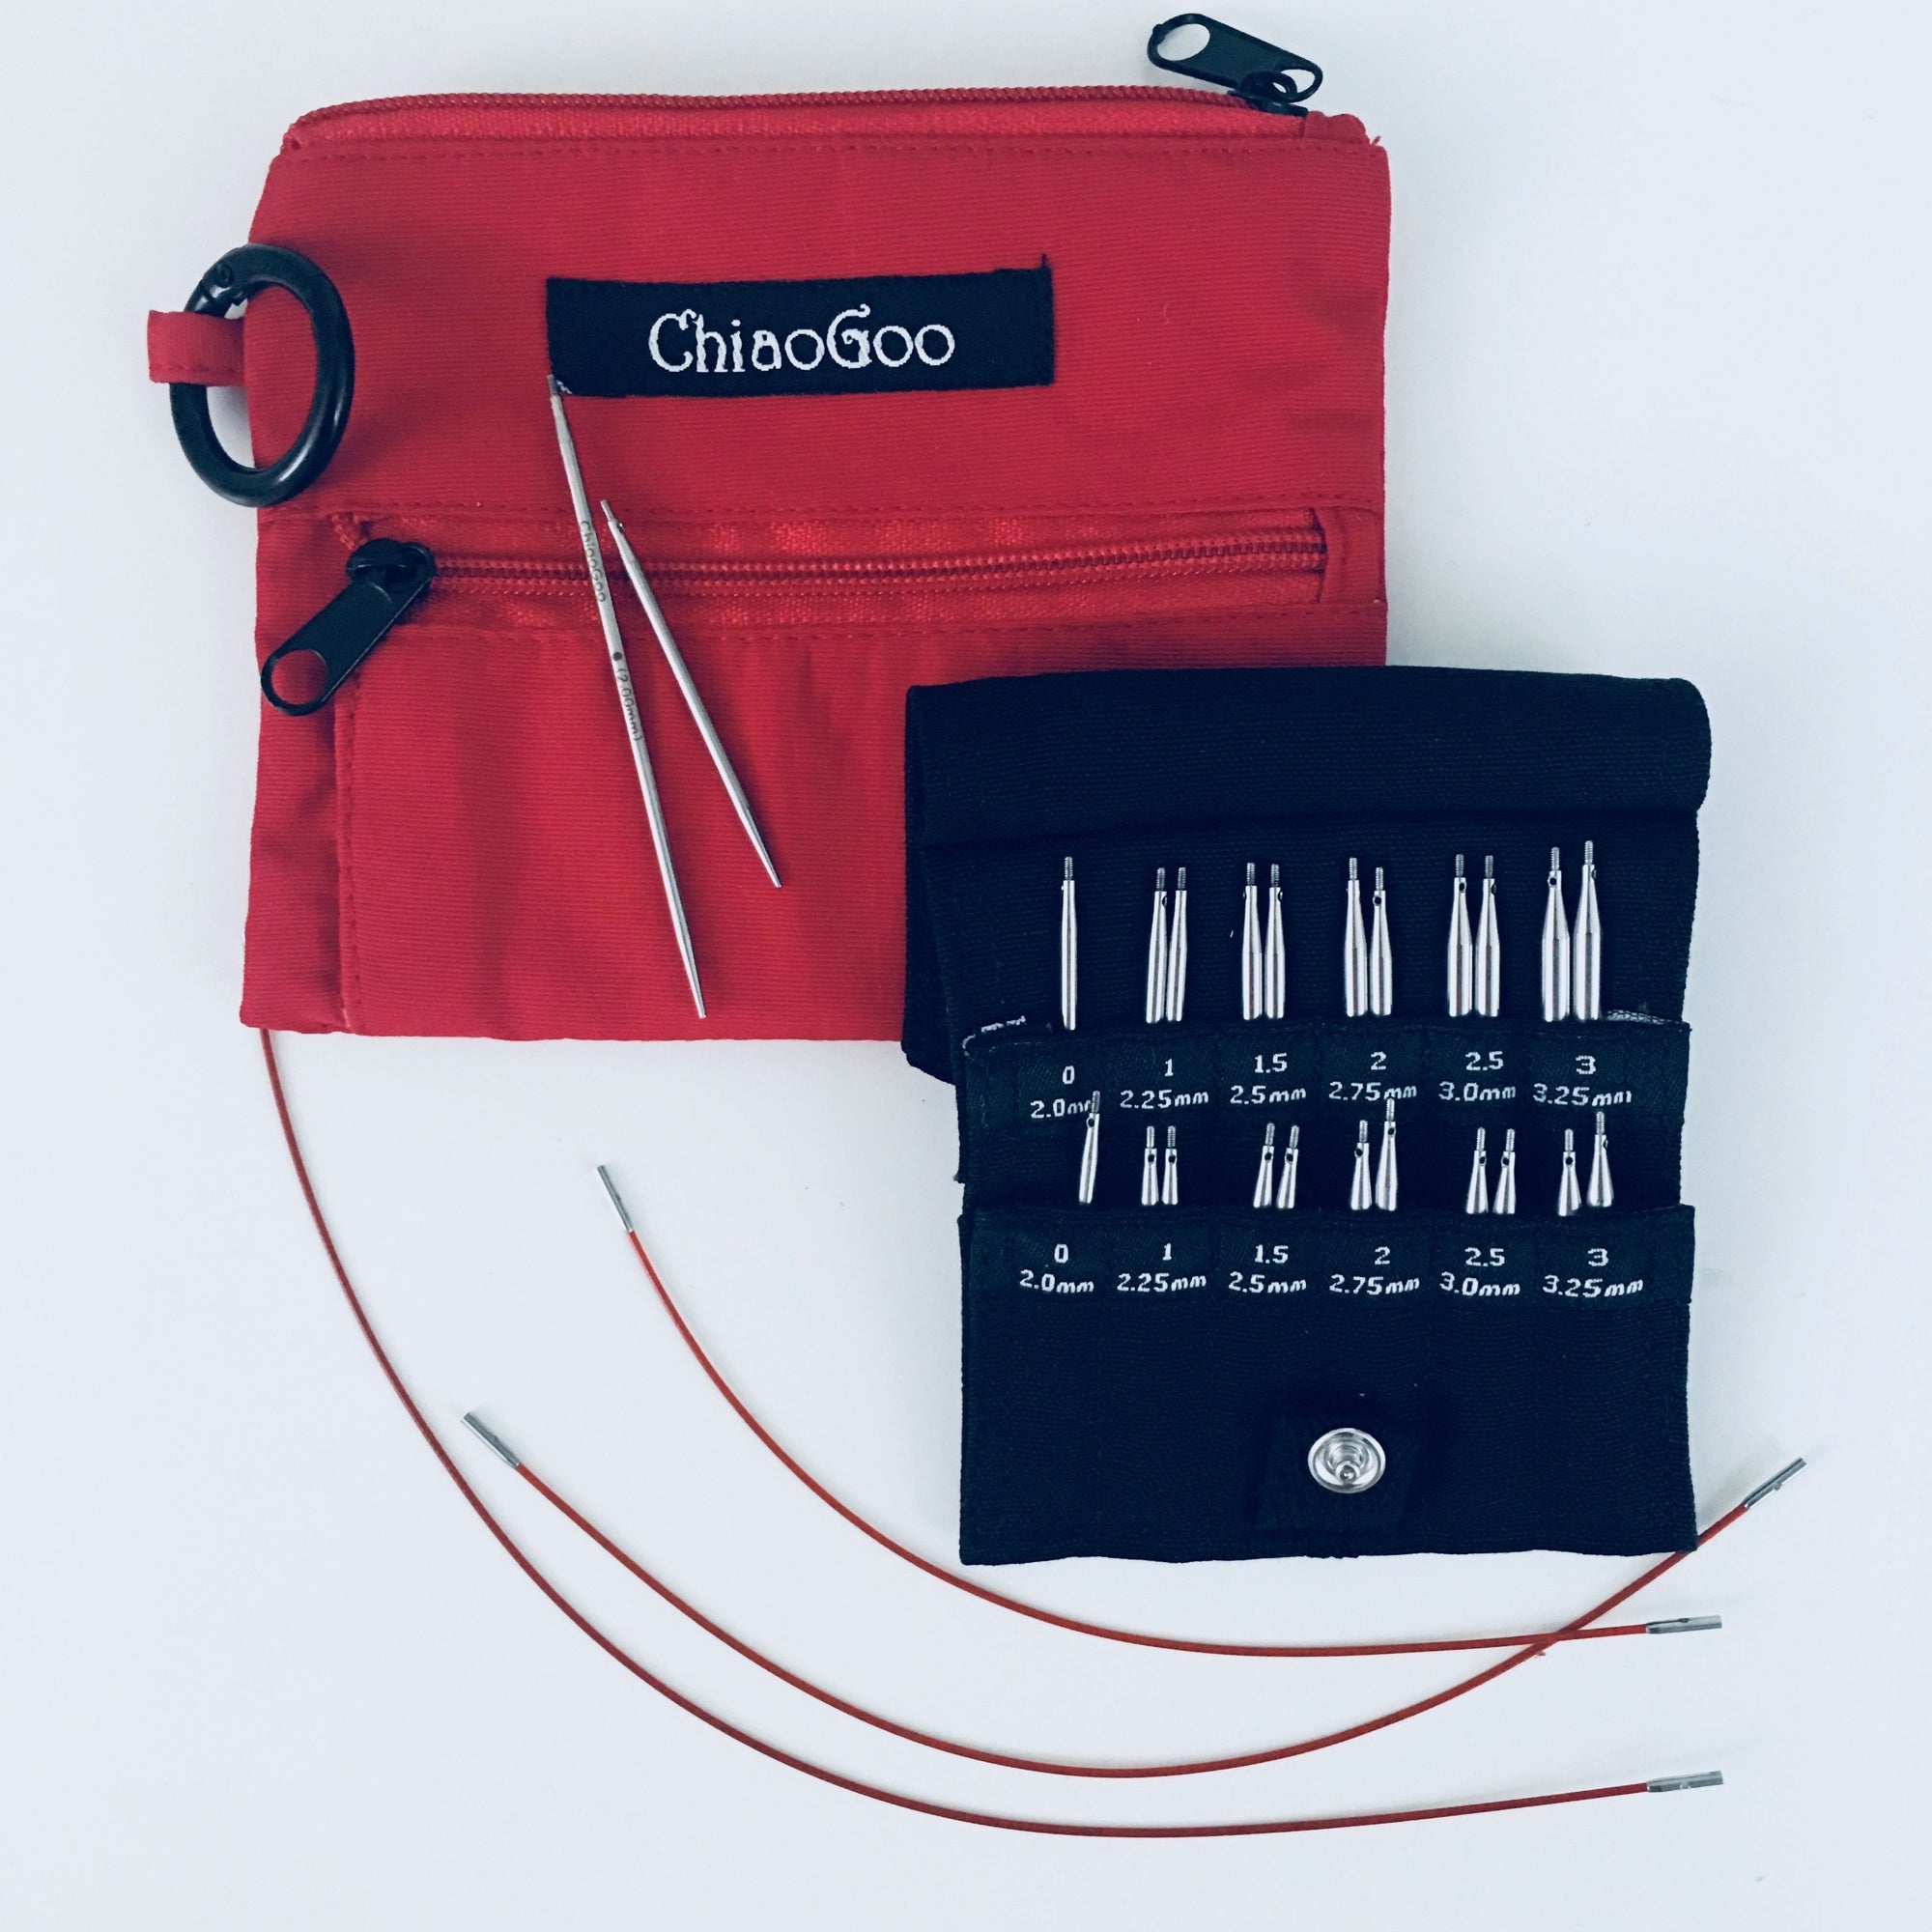 ChiaoGoo TWIST Red Lace Interchangeable Needle Sets – Warm 'n Fuzzy